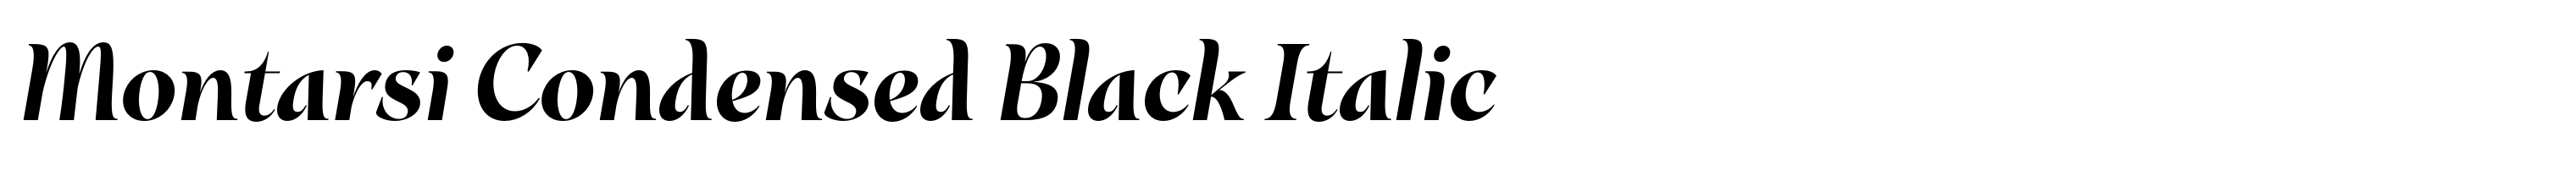 Montarsi Condensed Black Italic